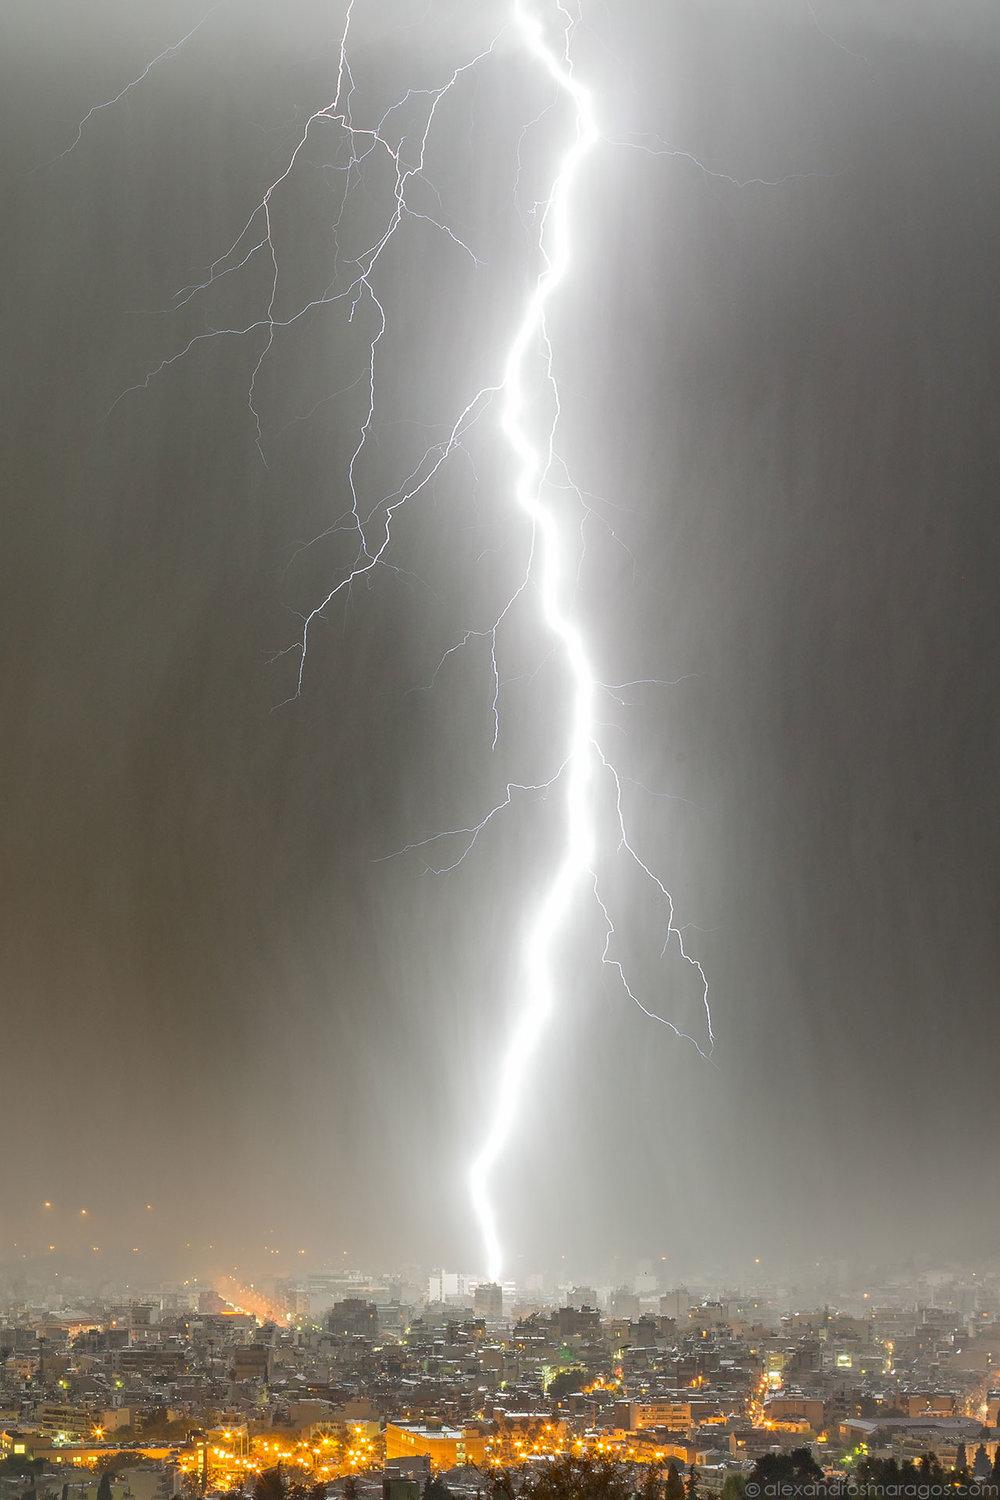 Lightning Strike Image for Phone Wallpaper